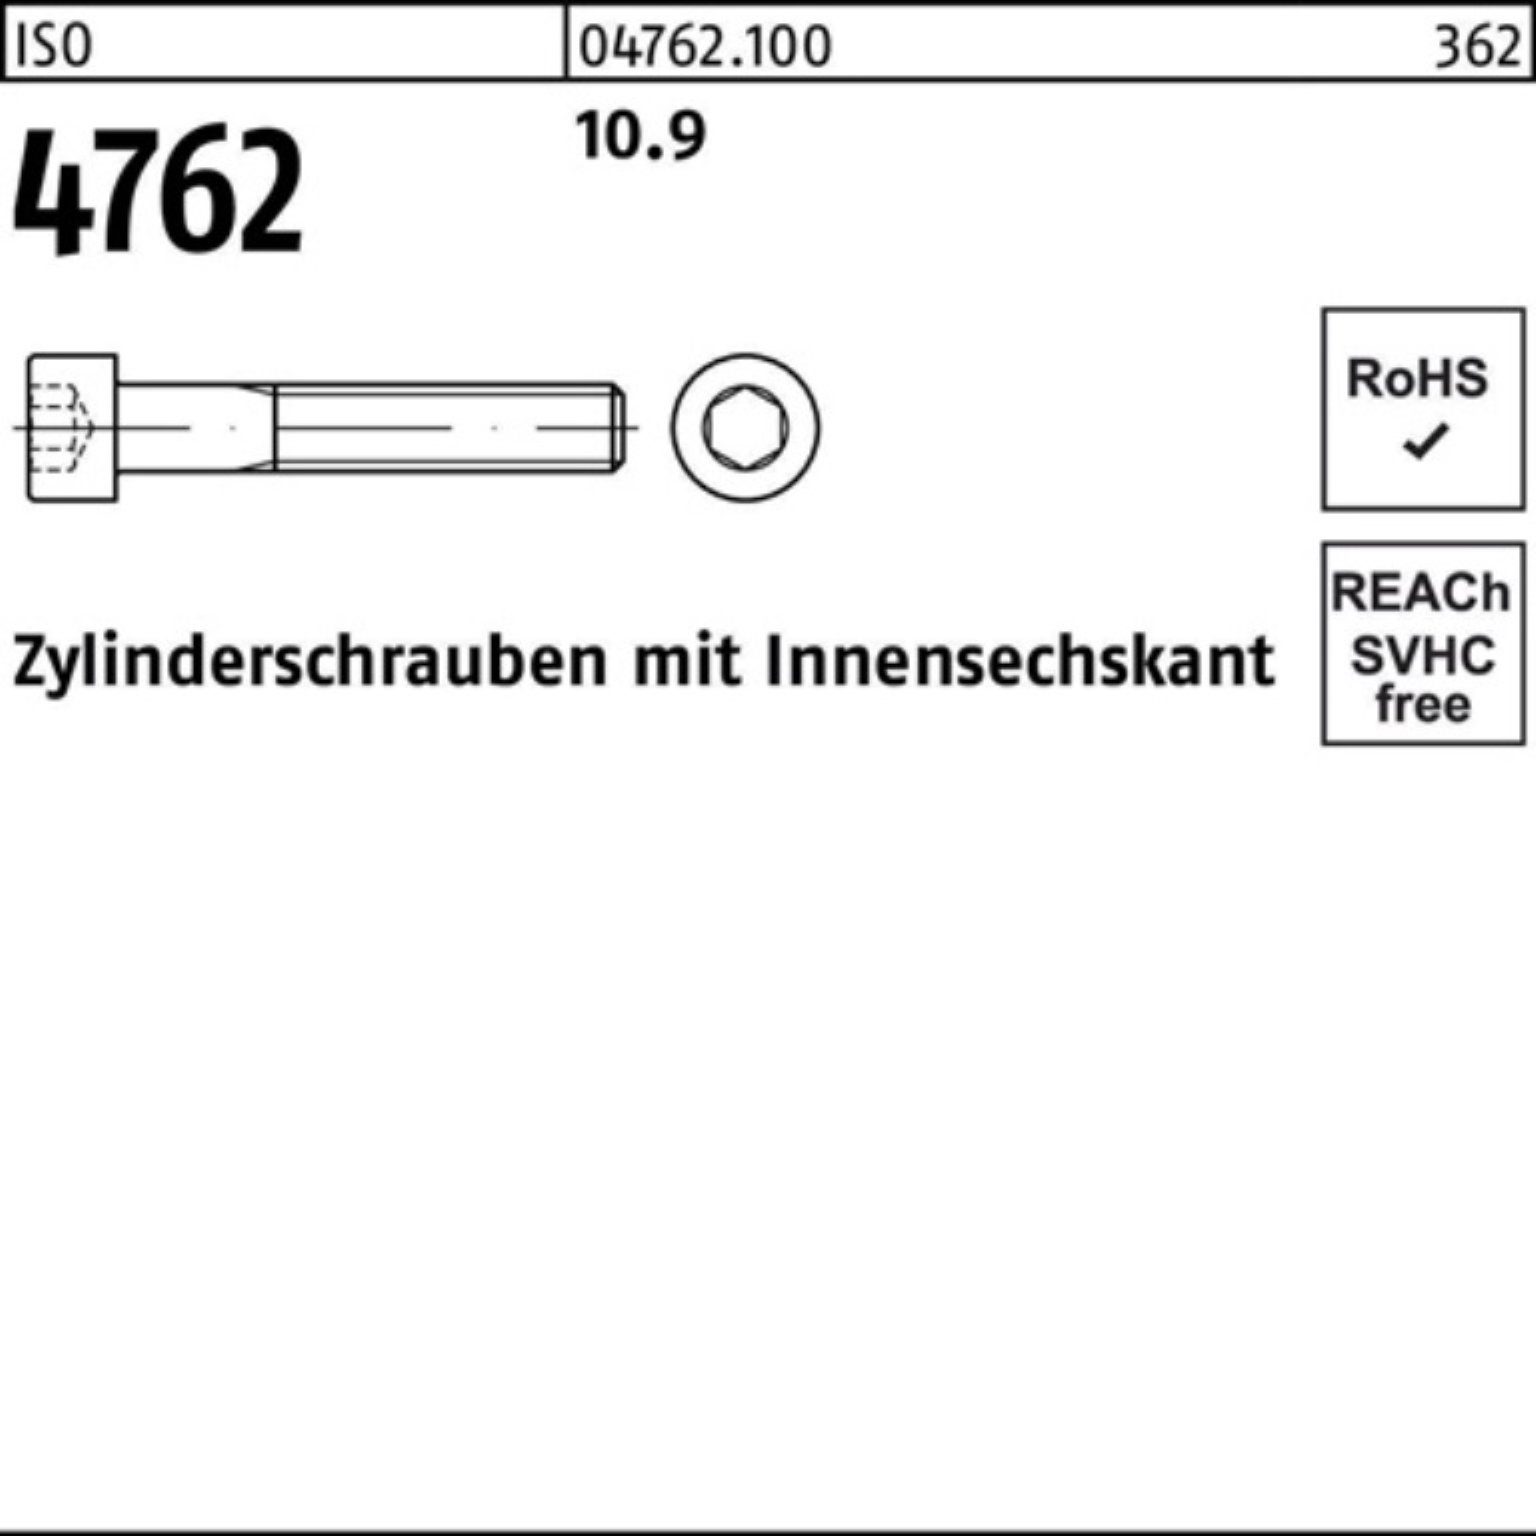 Pack 150 1 4762 Zylinderschraube Innen-6kt Reyher M33x 10.9 100er ISO Zylinderschraube Stück